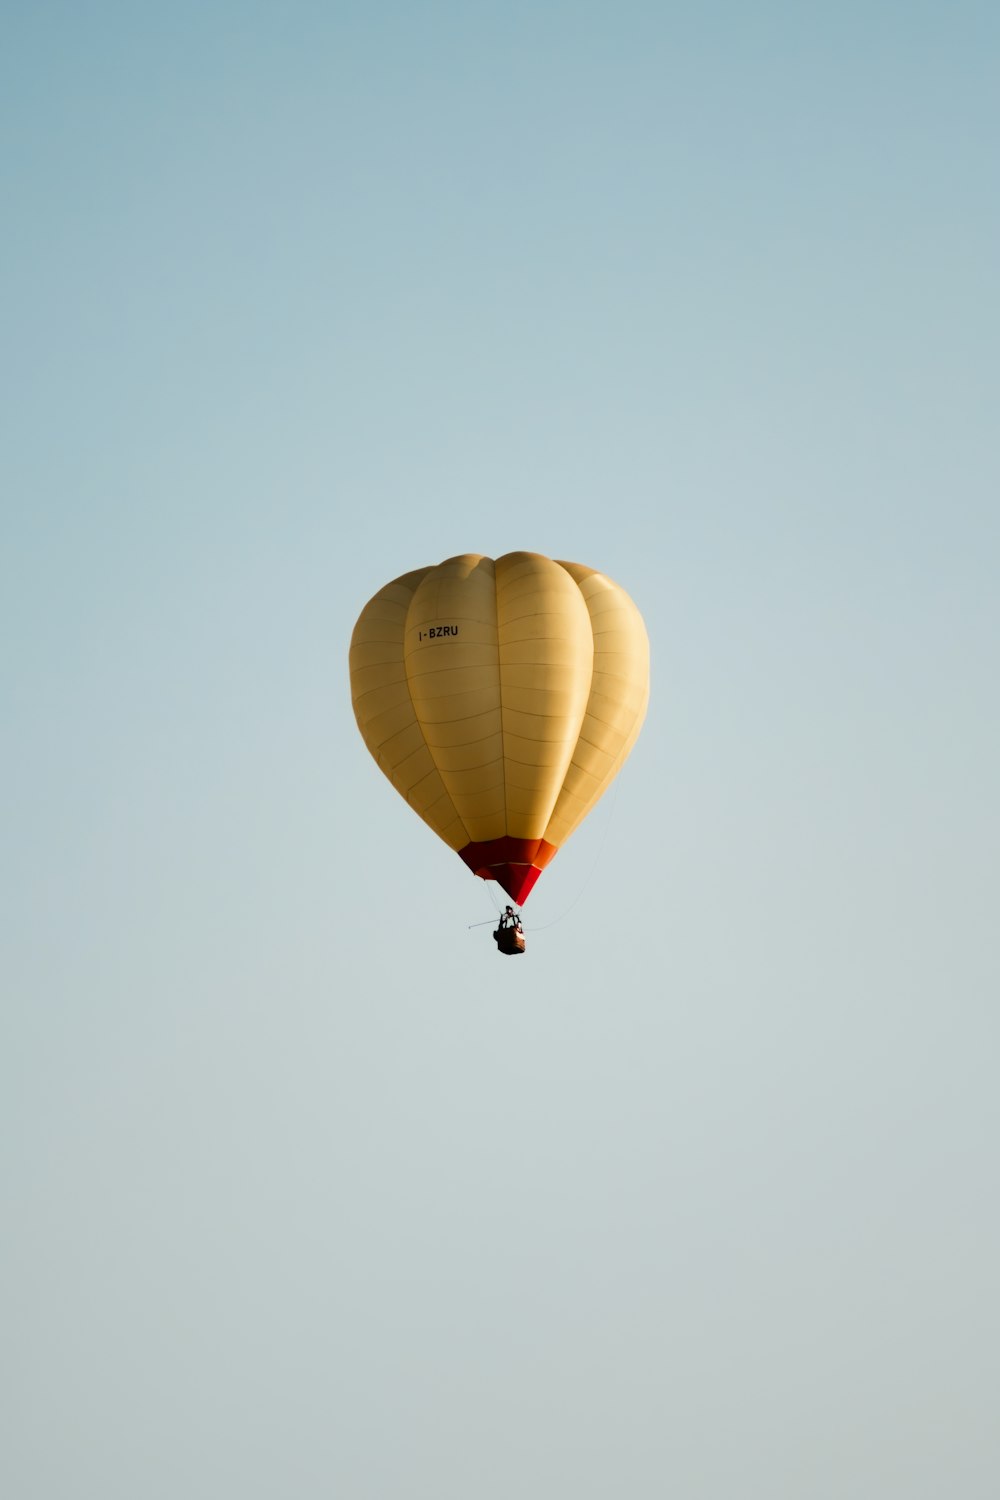 Une montgolfière volant dans le ciel